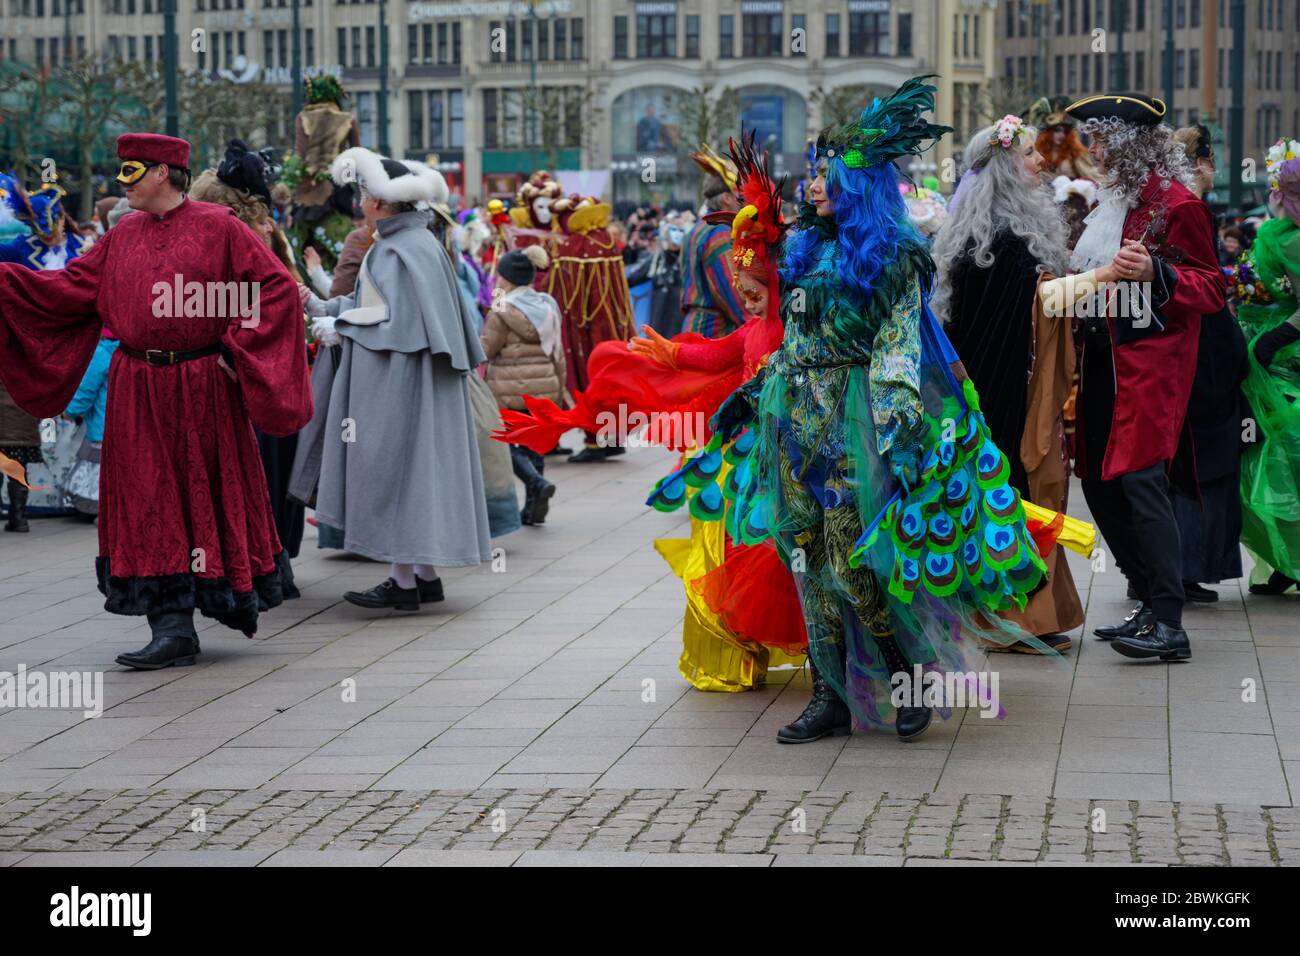 Hamburg, 08. Februar 2020: Menschen in bunten Kostümen und Masken tanzen auf der Maskenzauber-Feier in Hamburg, einer Karnevalsstraße Stockfoto